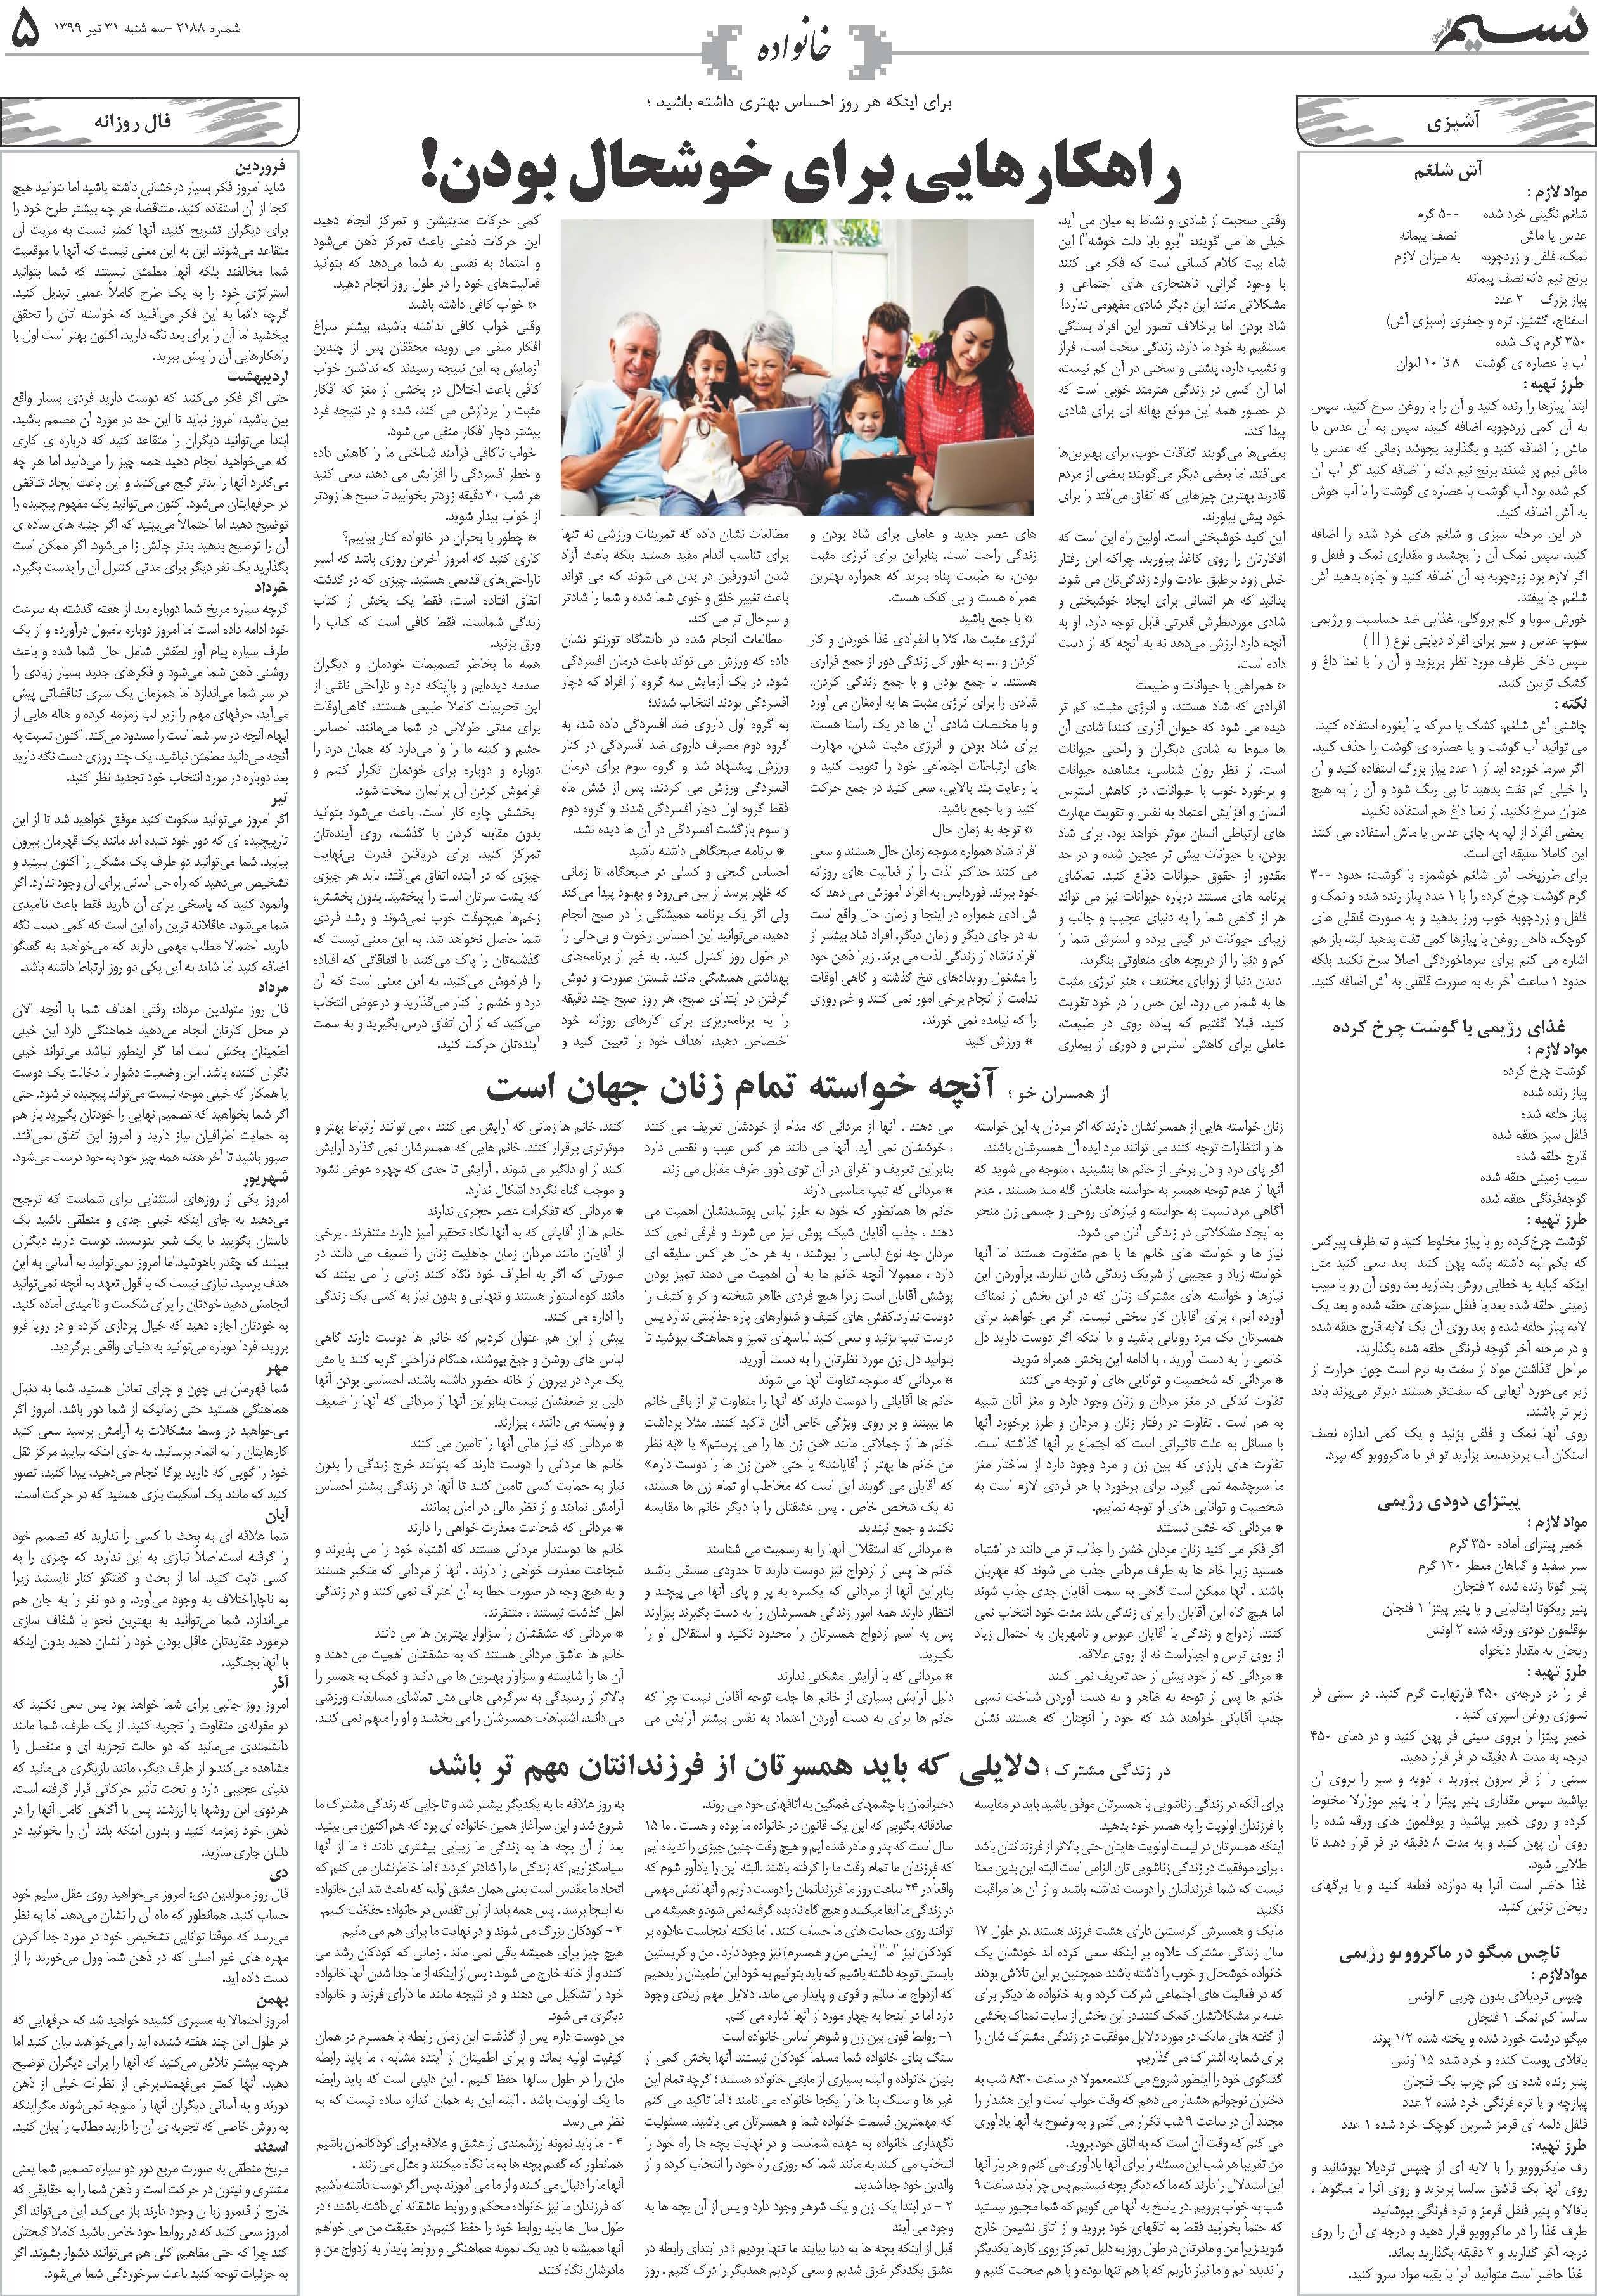 صفحه خانواده روزنامه نسیم شماره 2188